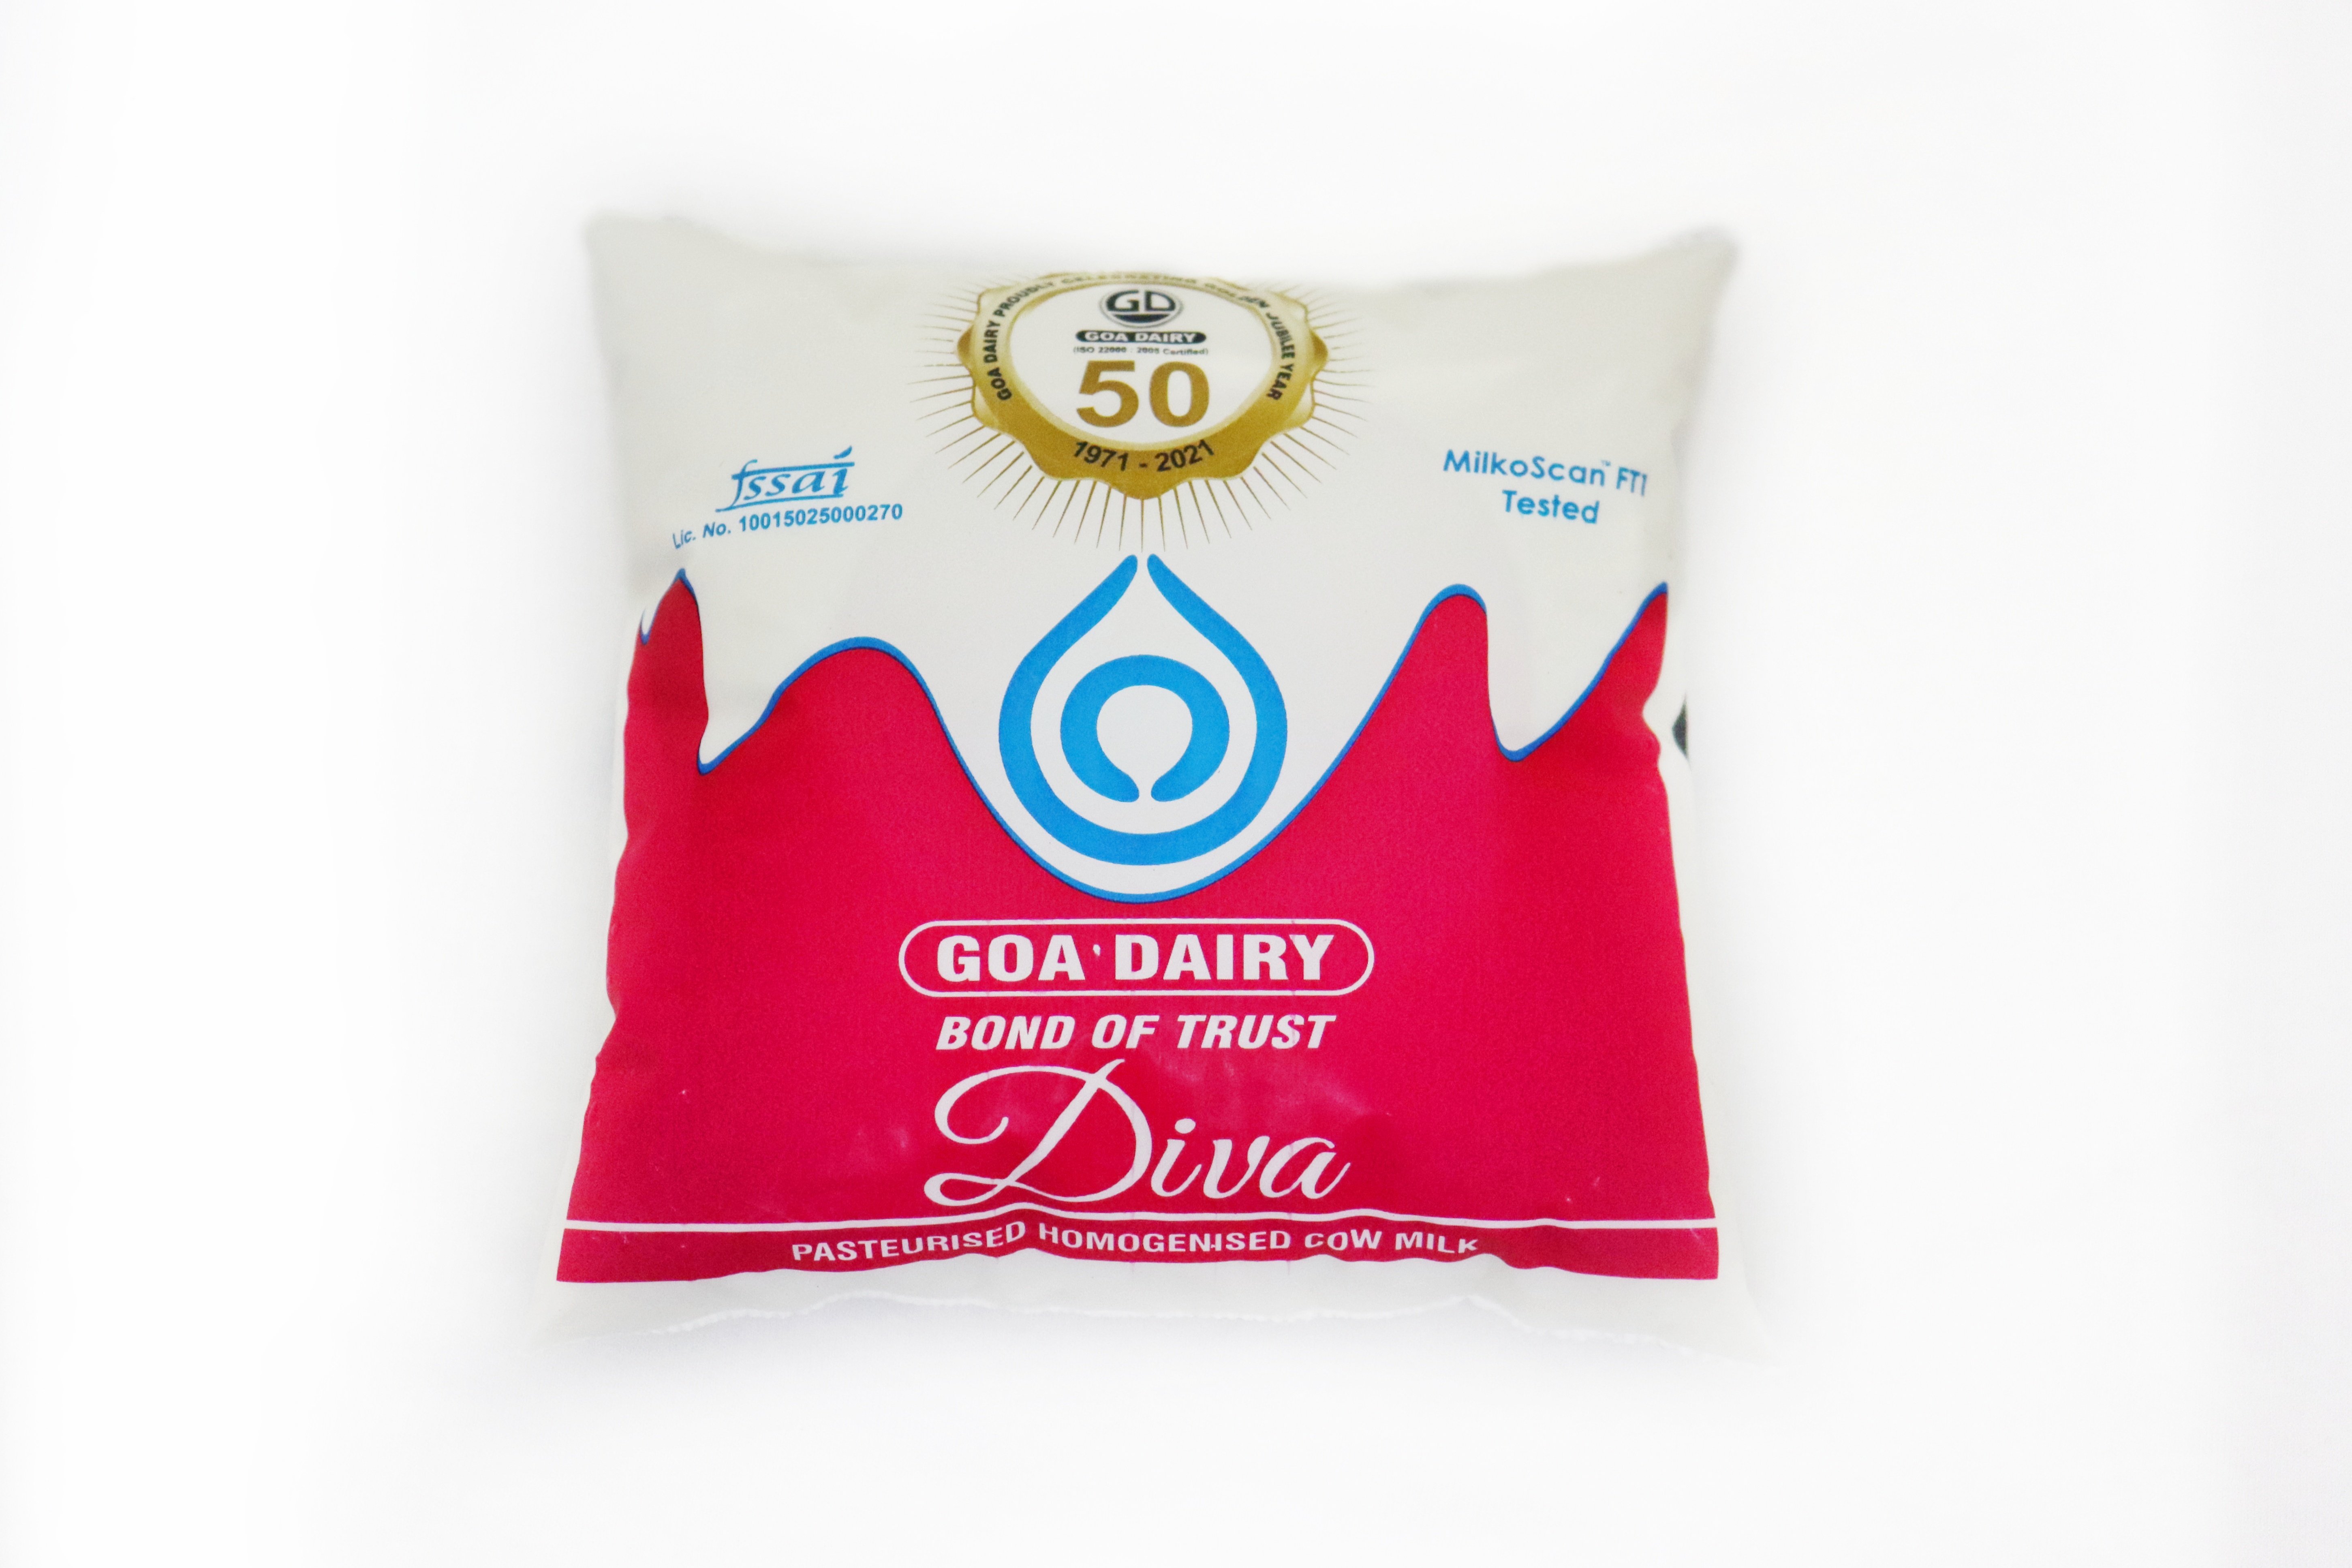 Goa Dairy Diva Cow Milk 500 ml pouch